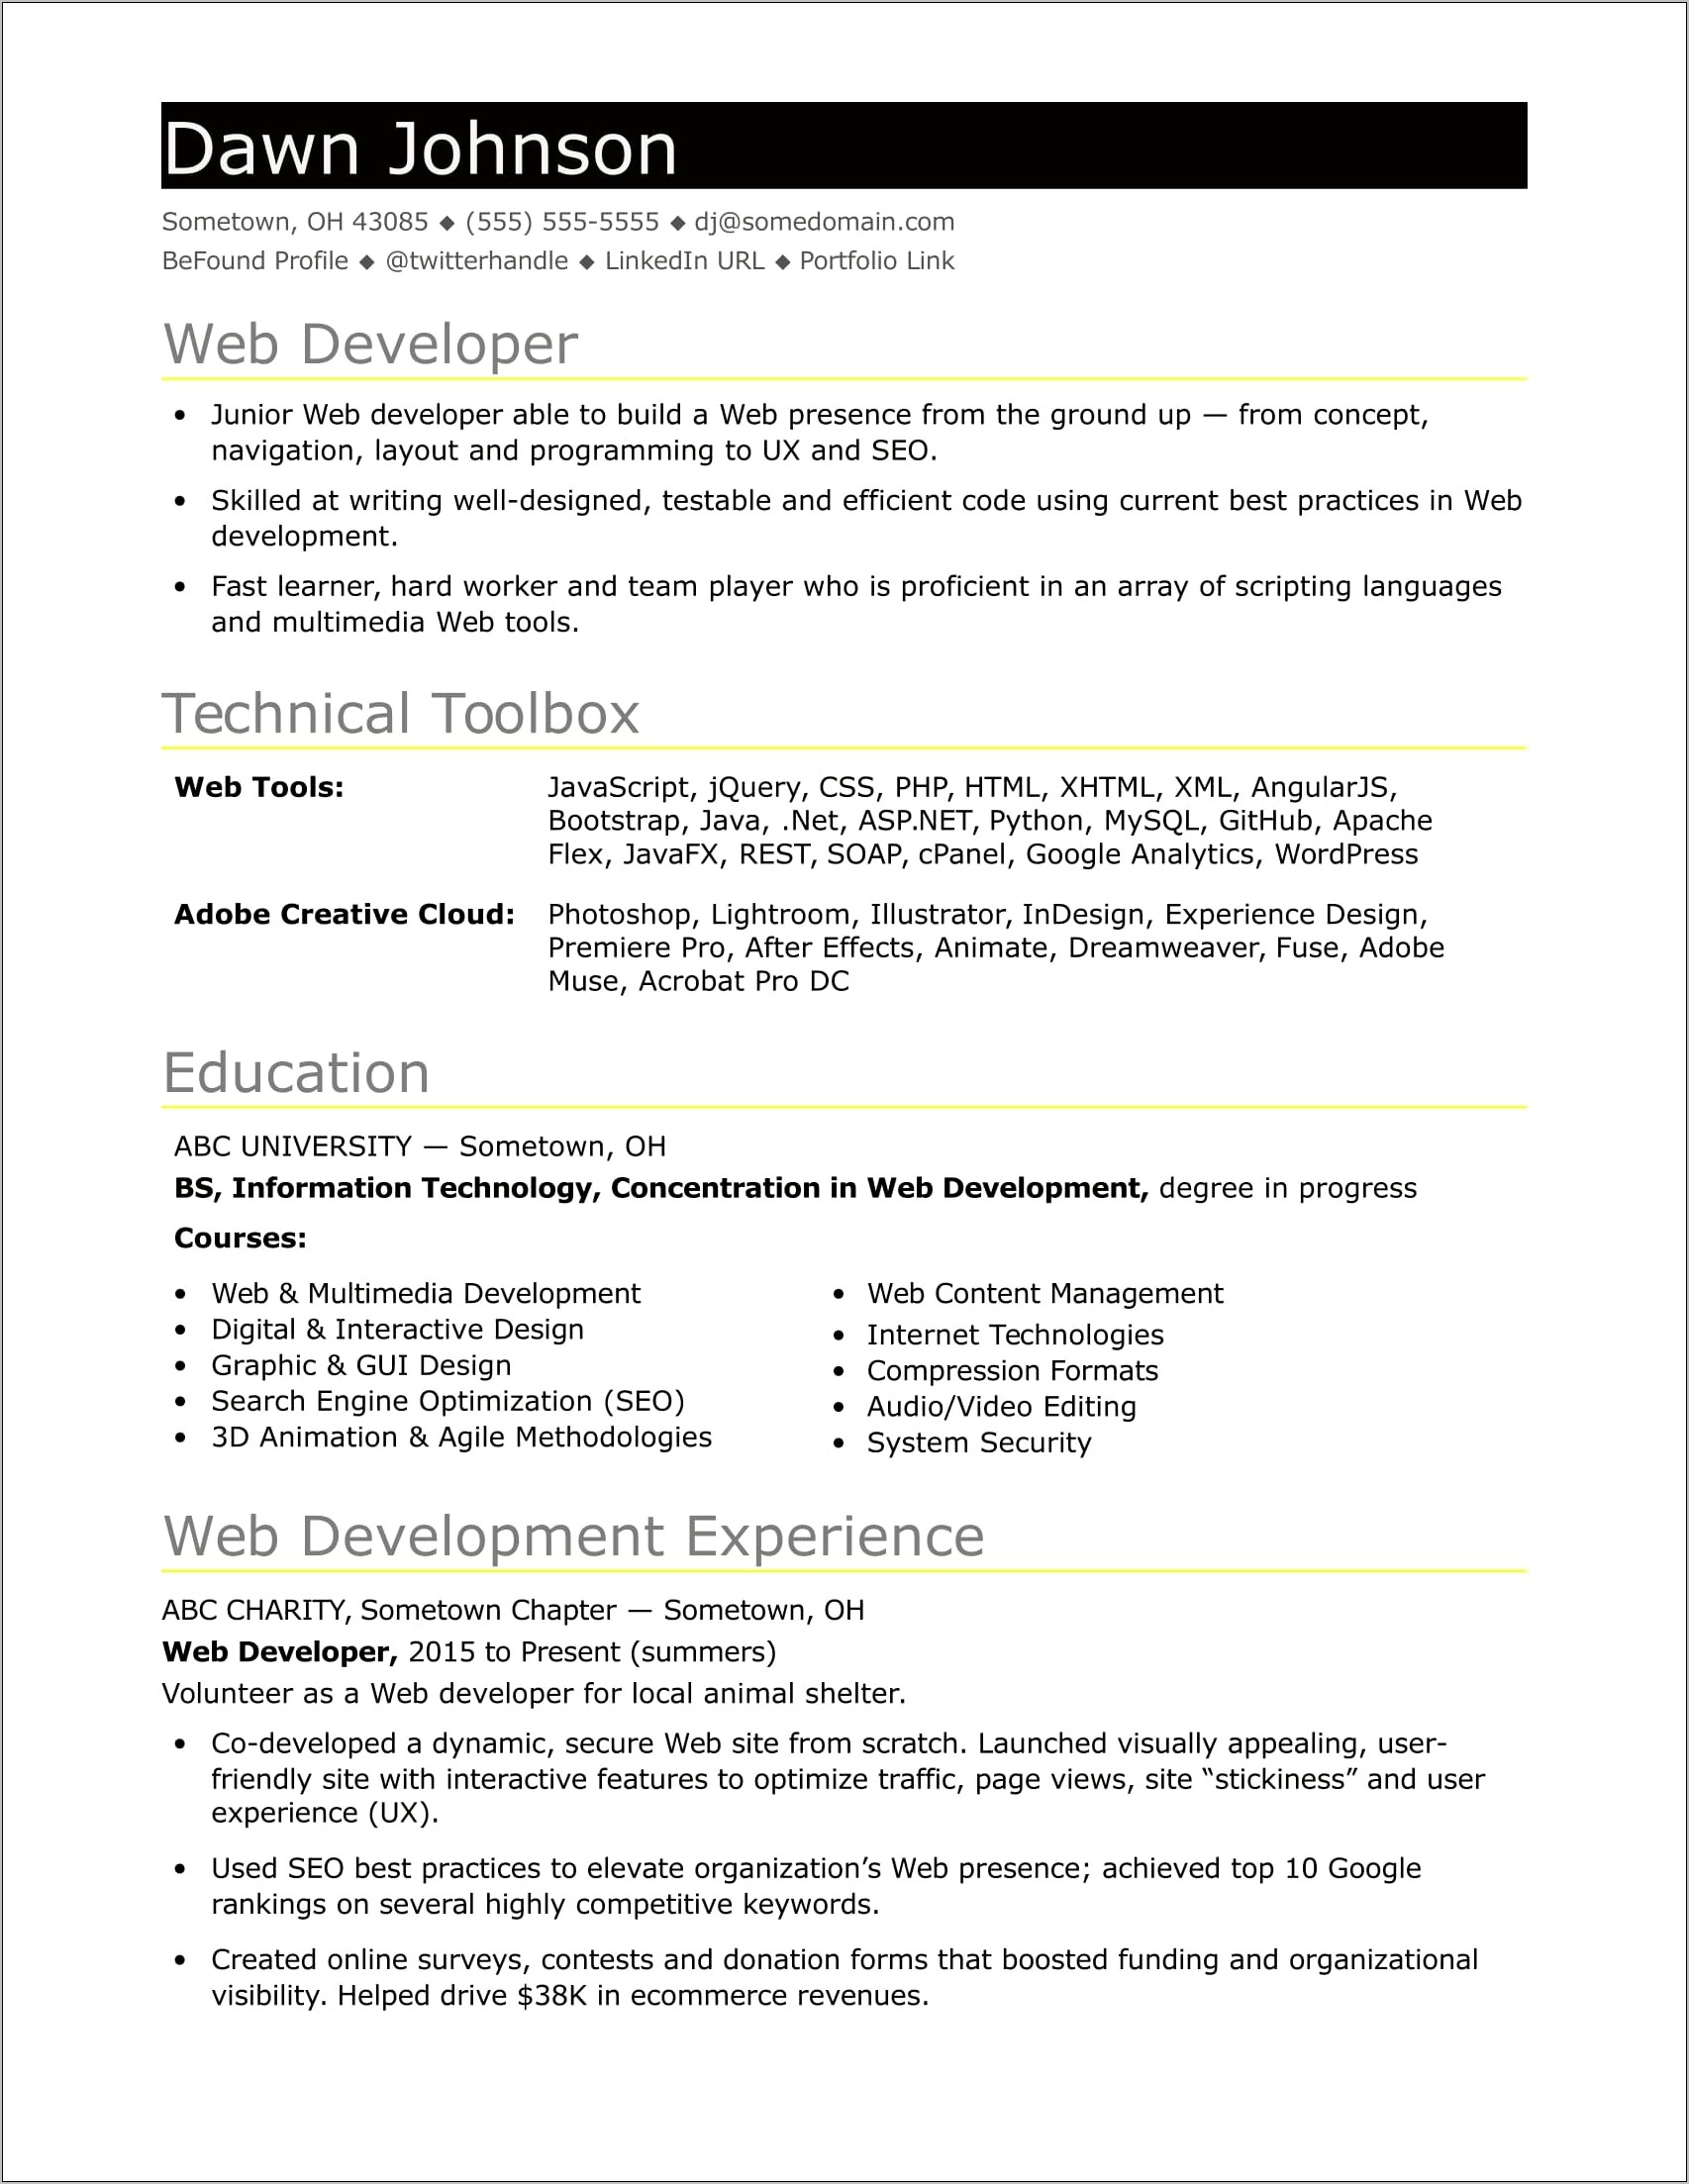 Resume Summary Entry Level Web Development